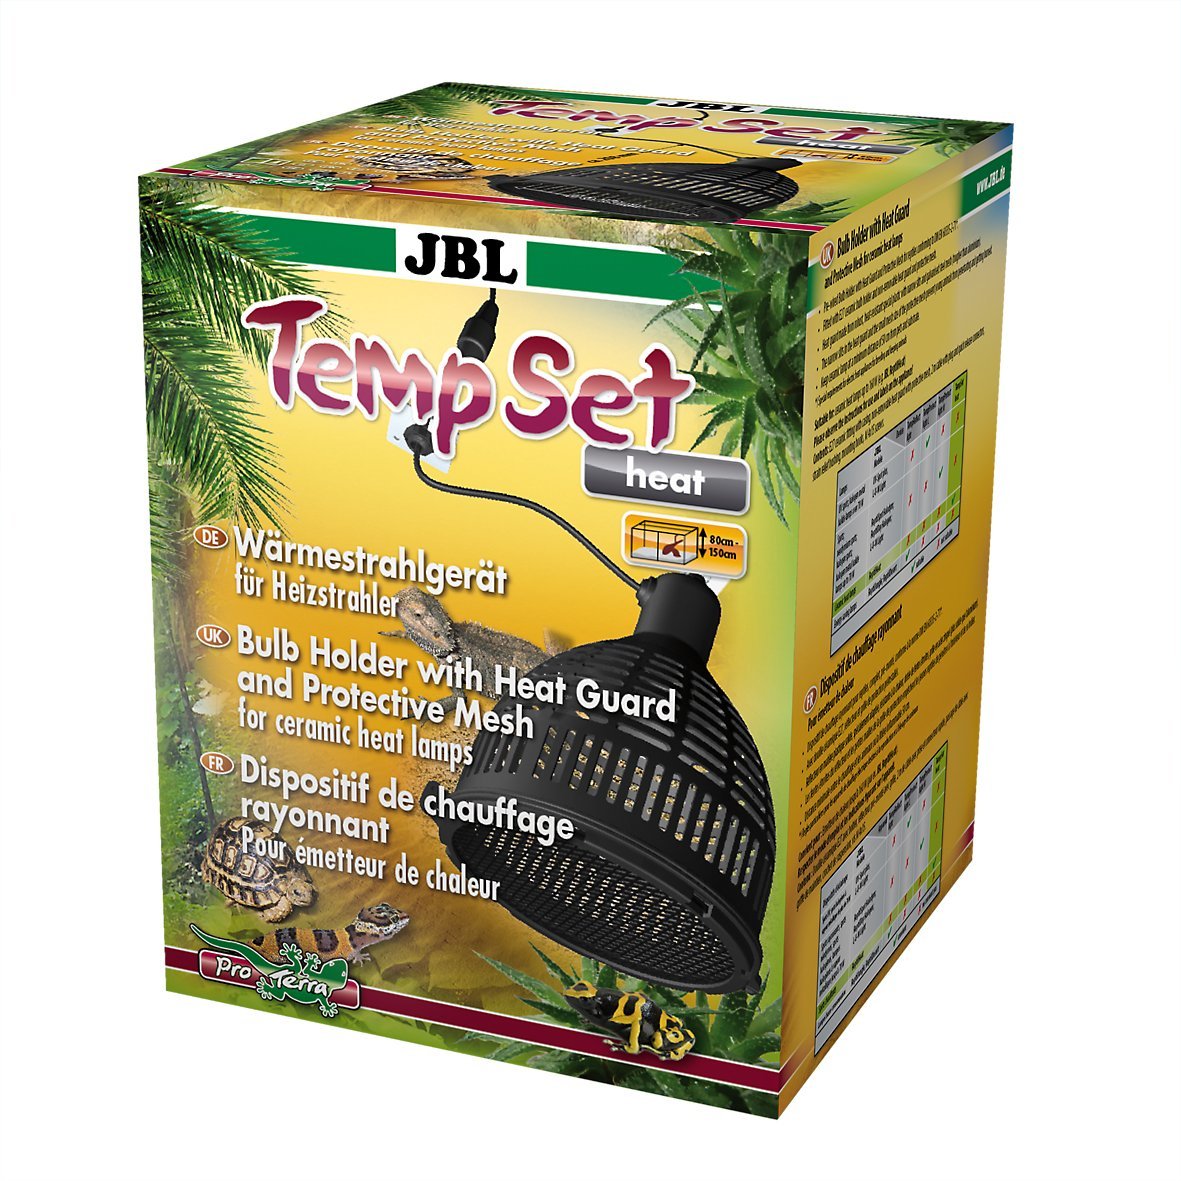 JBL TempSet Heat 71185 Installationsset mit Keramikfassung für Wärmestrahler Schutzschirm Schutzgitter, 160 W, E27